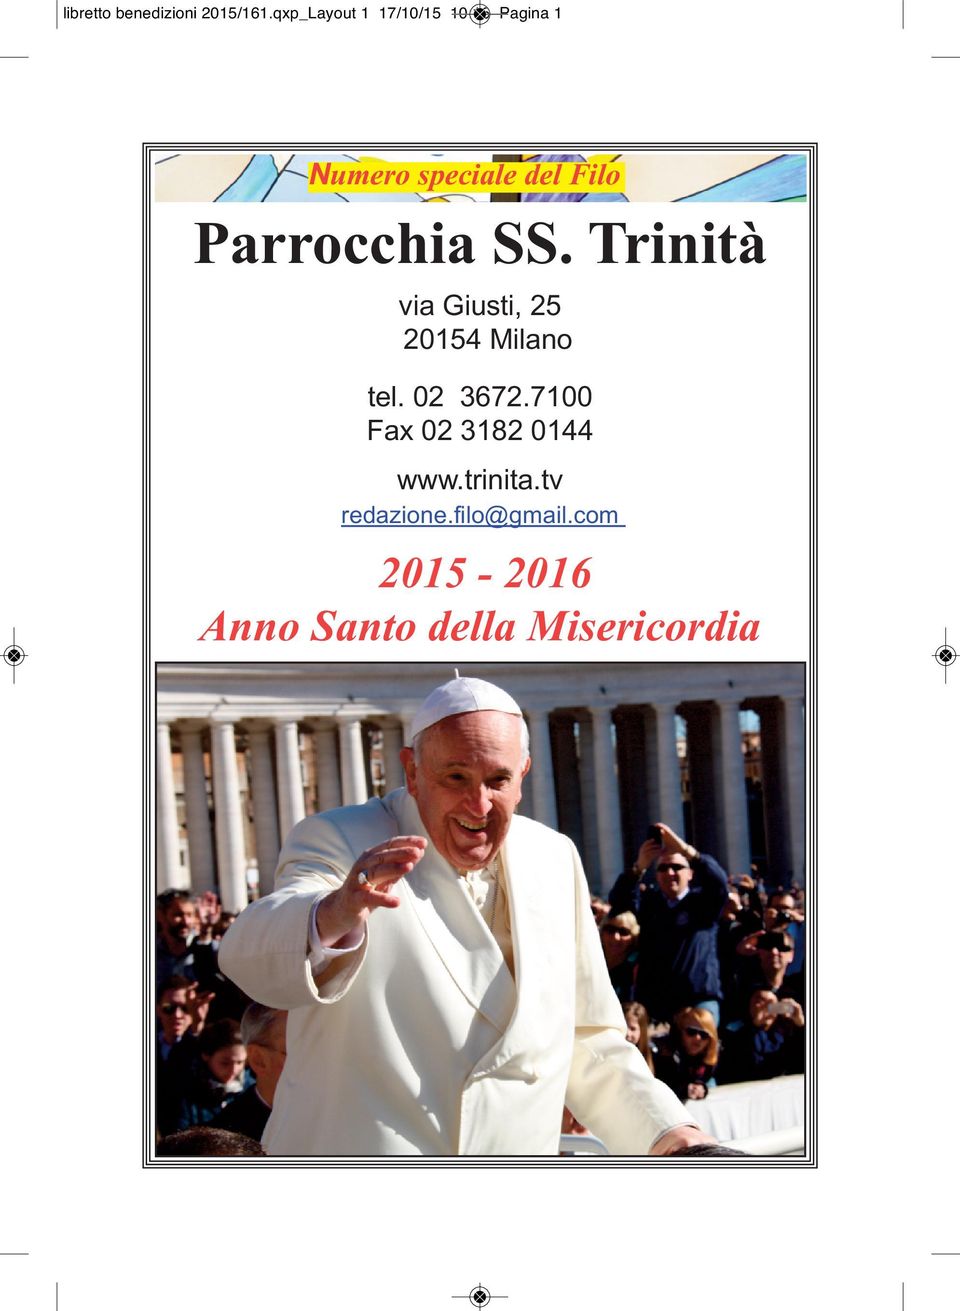 Parrocchia SS. Trinità via Giusti, 25 20154 Milano tel. 02 3672.